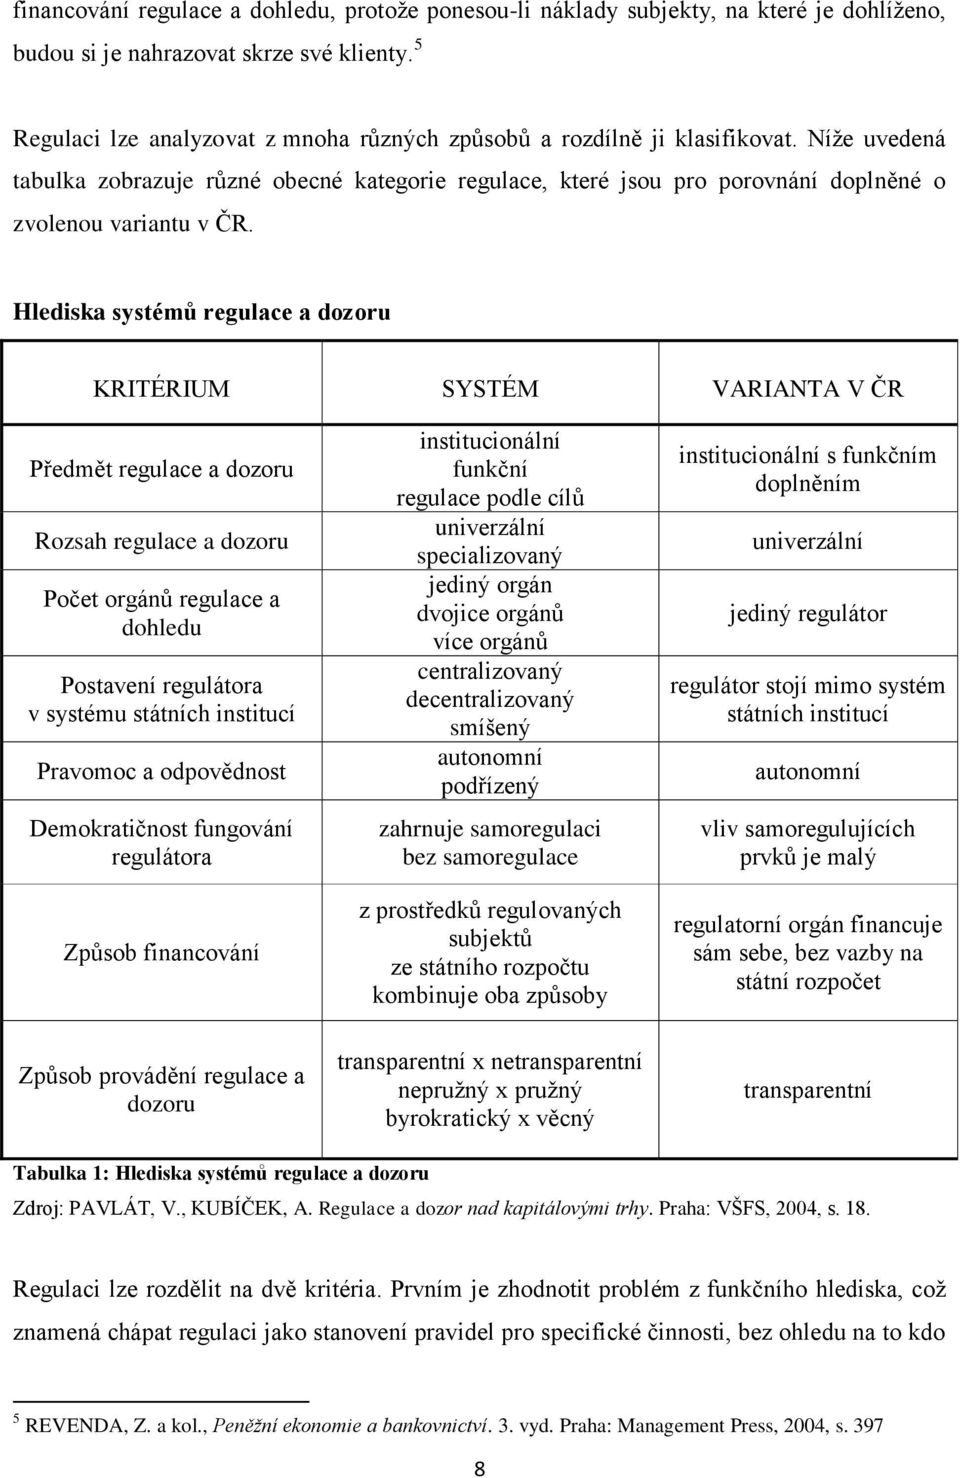 Níže uvedená tabulka zobrazuje různé obecné kategorie regulace, které jsou pro porovnání doplněné o zvolenou variantu v ČR.